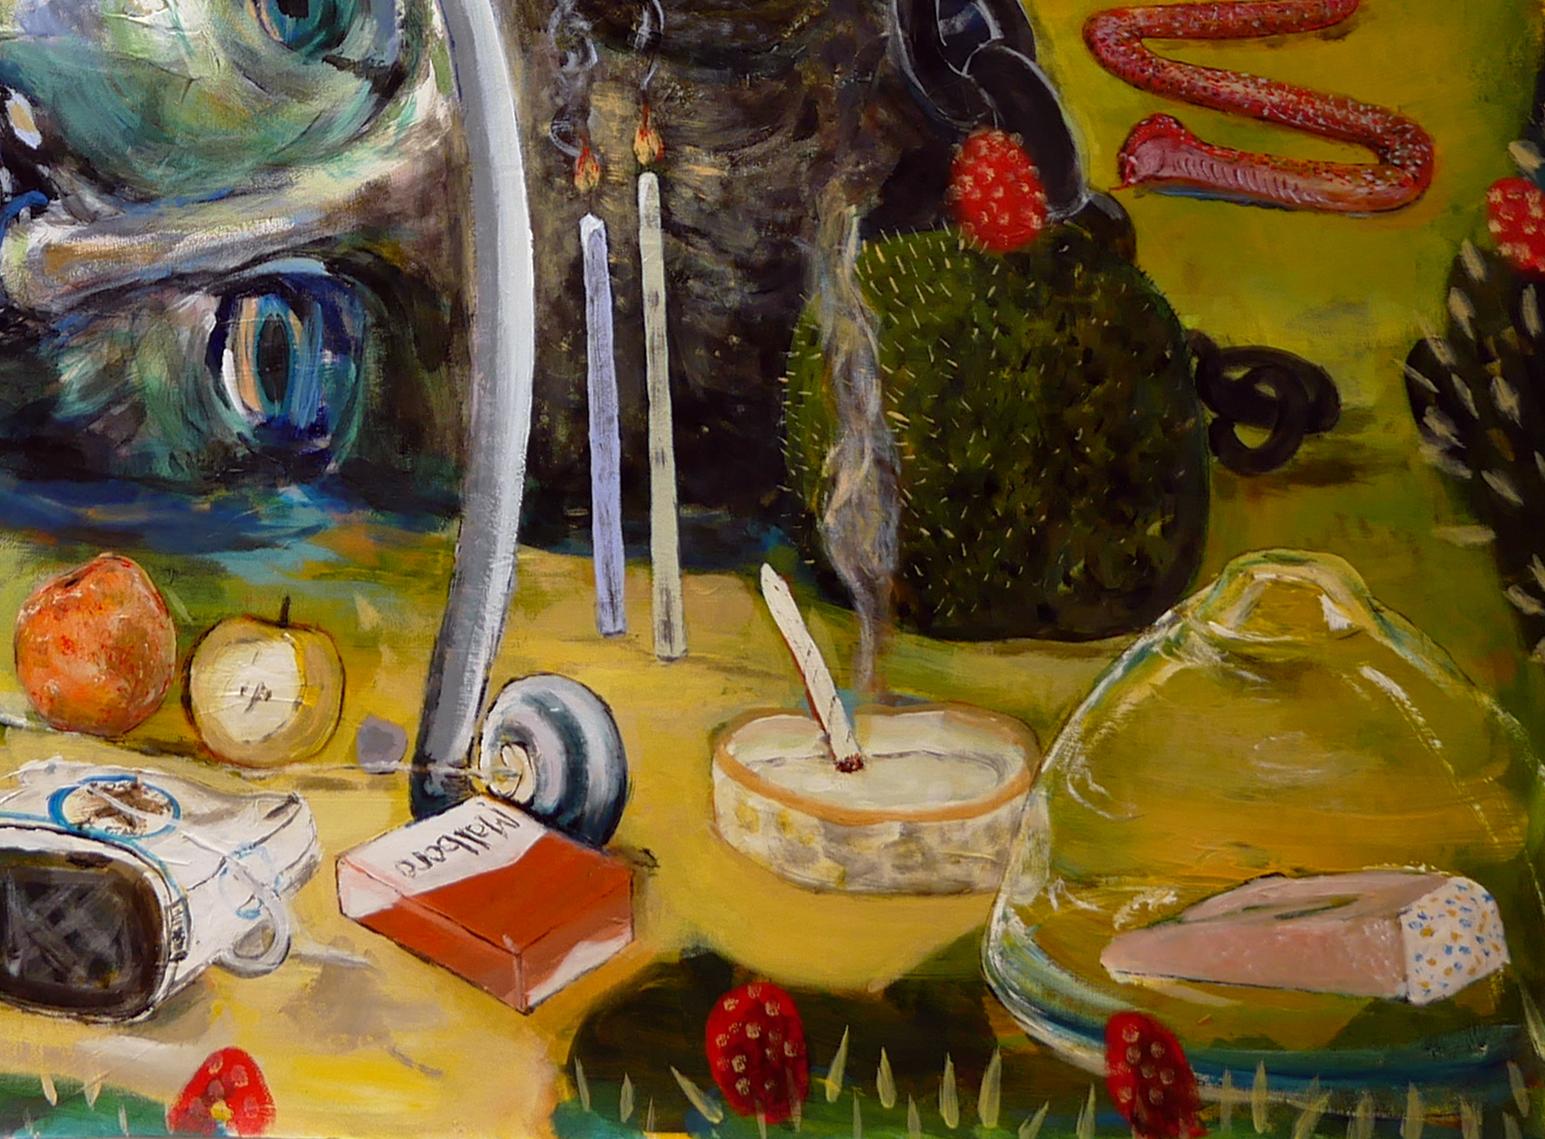 Buntes, skurriles, abstraktes zeitgenössisches Gemälde des Künstlers Moisés Villafuerte aus Houston, TX. Das Werk zeigt eine surreale Sammlung von Gegenständen, darunter eine große Skulptur eines Kopfes, ein Anker, ein Pfeil und Bogen und ein roter